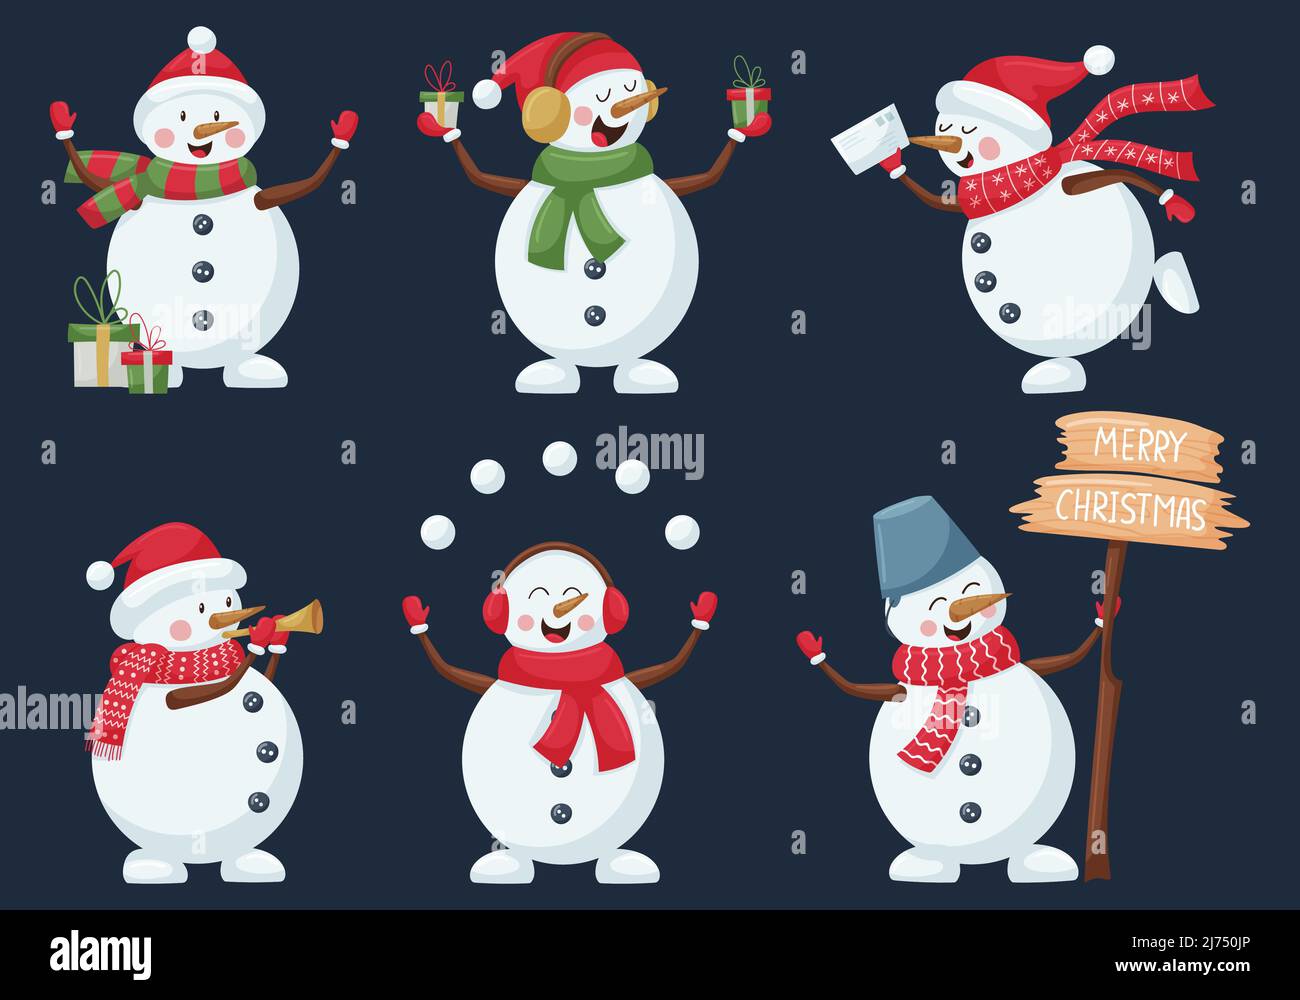 Collection de bonhommes de neige de Noël. Personnages de dessin animé mignons jonglant avec des boules de neige, soufflant un tuyau, donnant des cadeaux, félicitant Joyeux Noël. Isolé sur Illustration de Vecteur